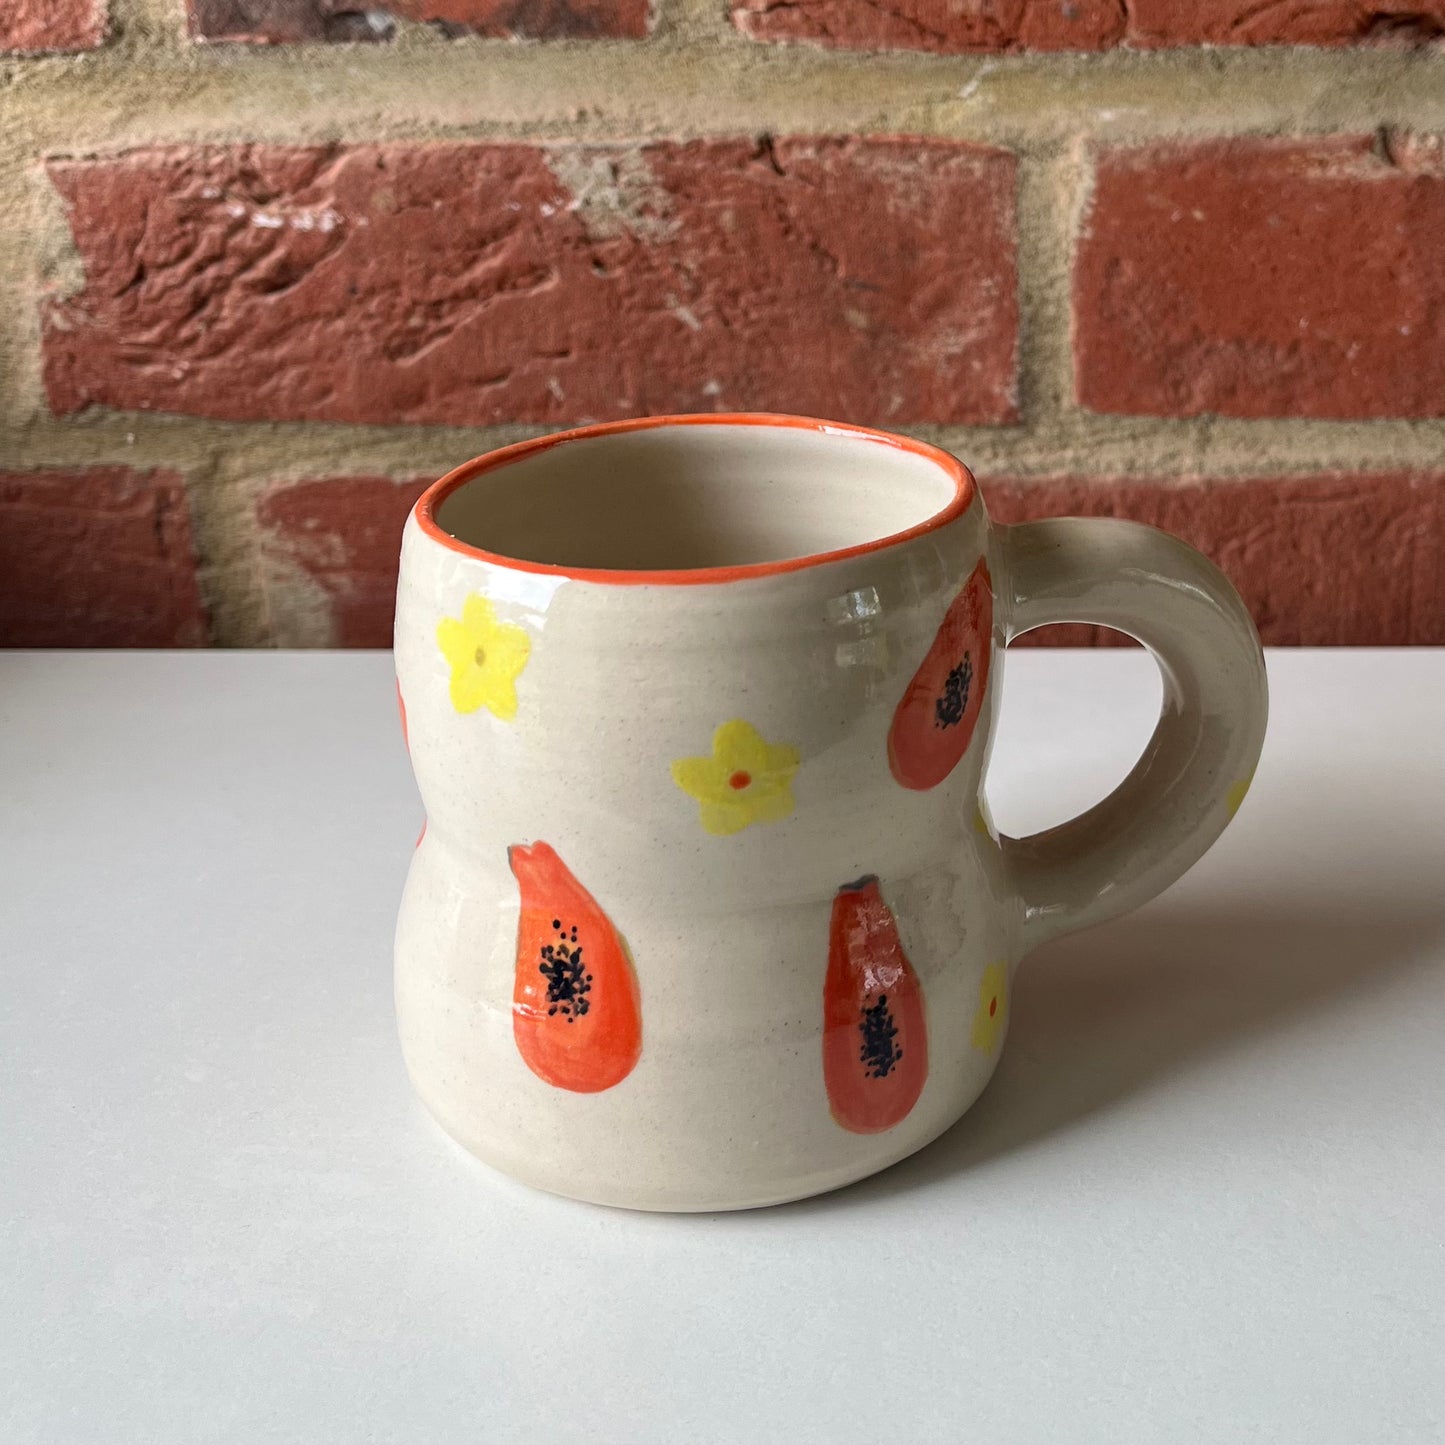 Olivia's papaya mug